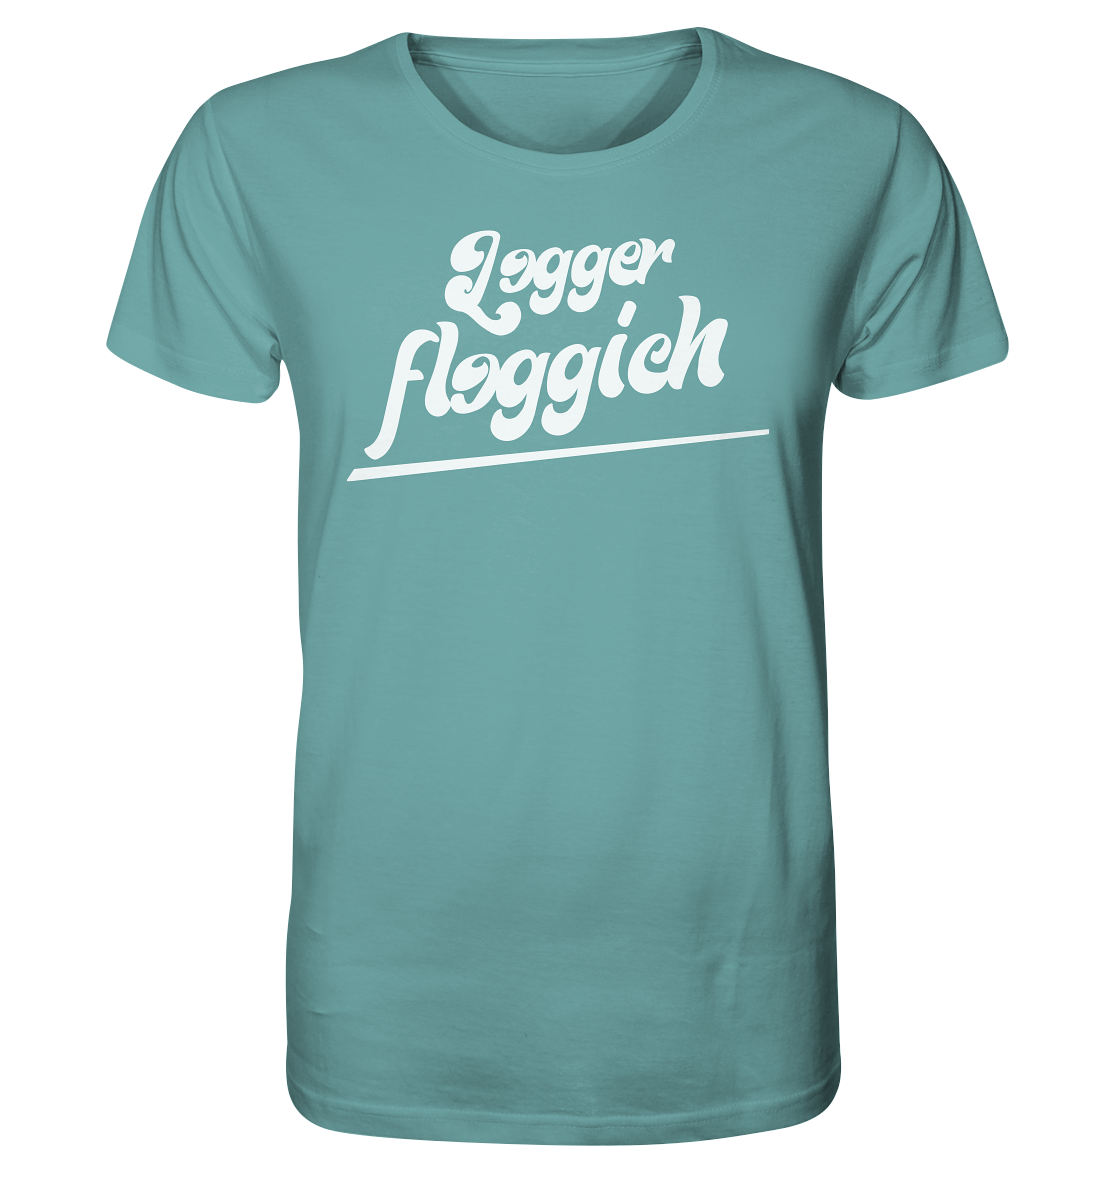 T-Shirt - Logger floggich - Größe XL